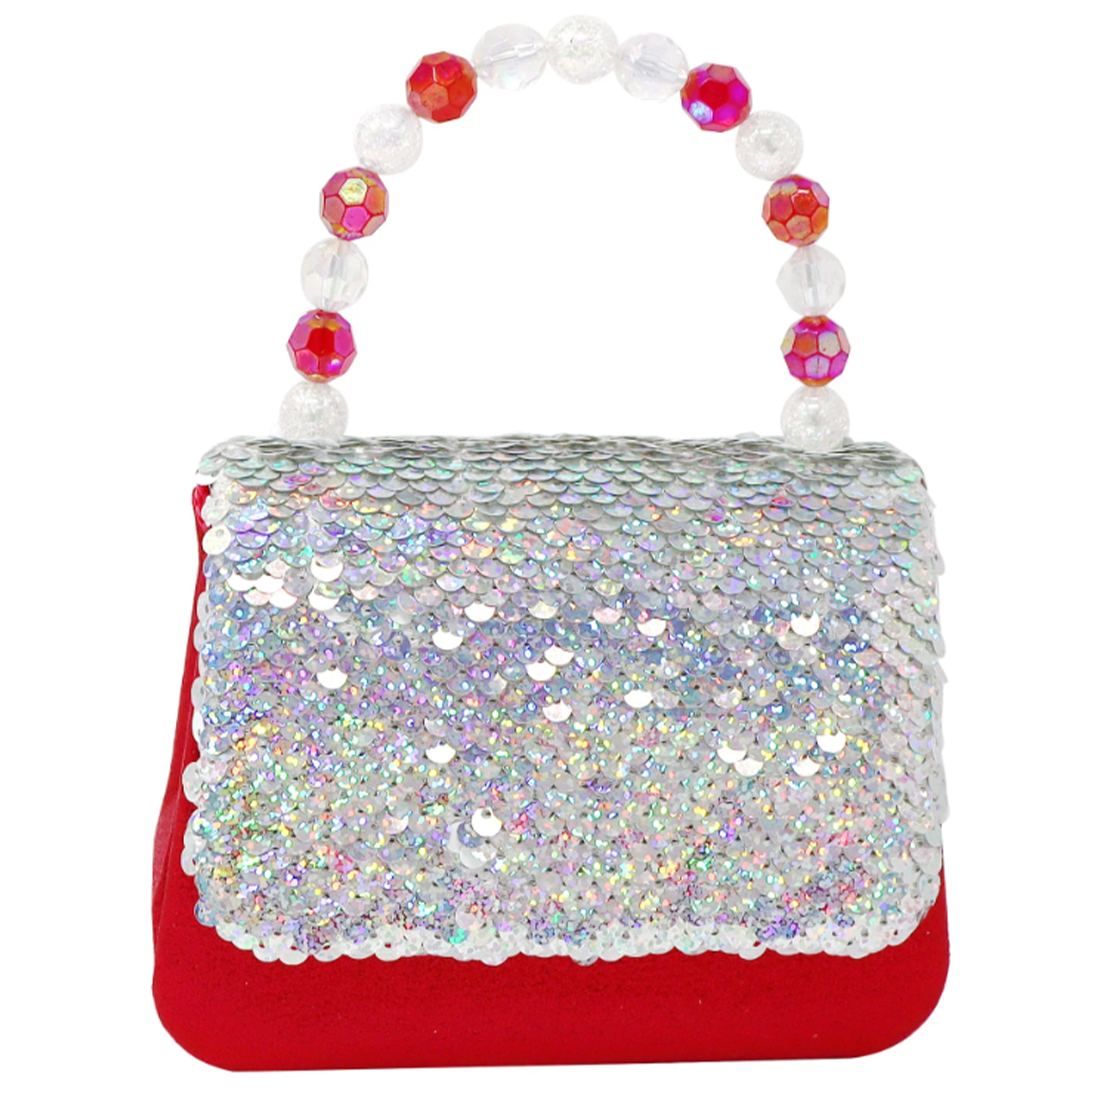 Reversible Red and White Sequin Festive Hard Handbag